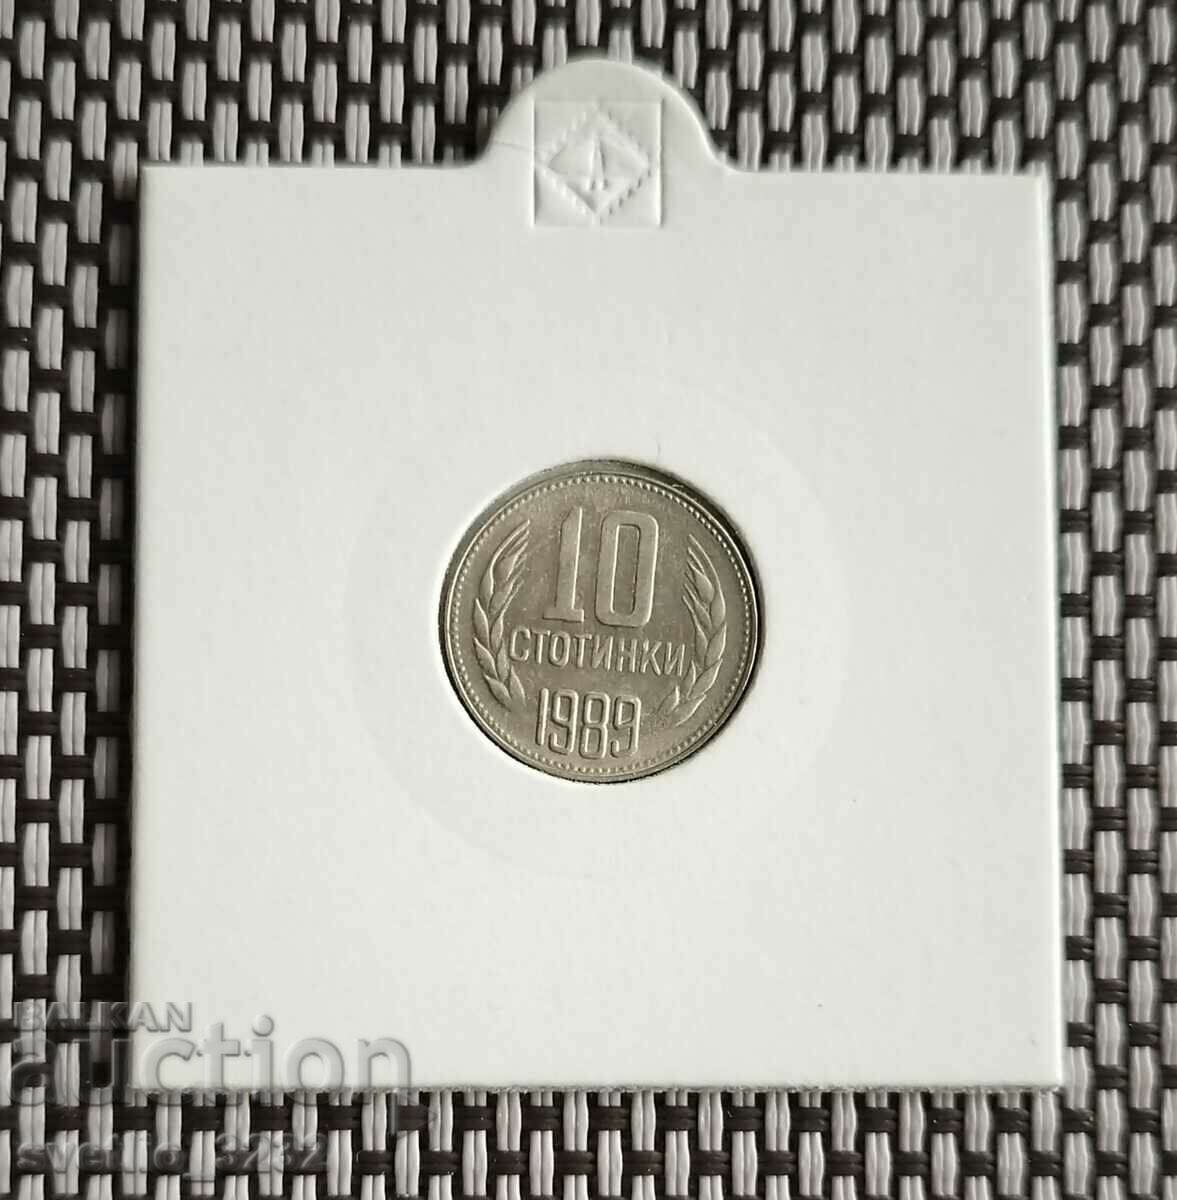 10 стотинки 1989